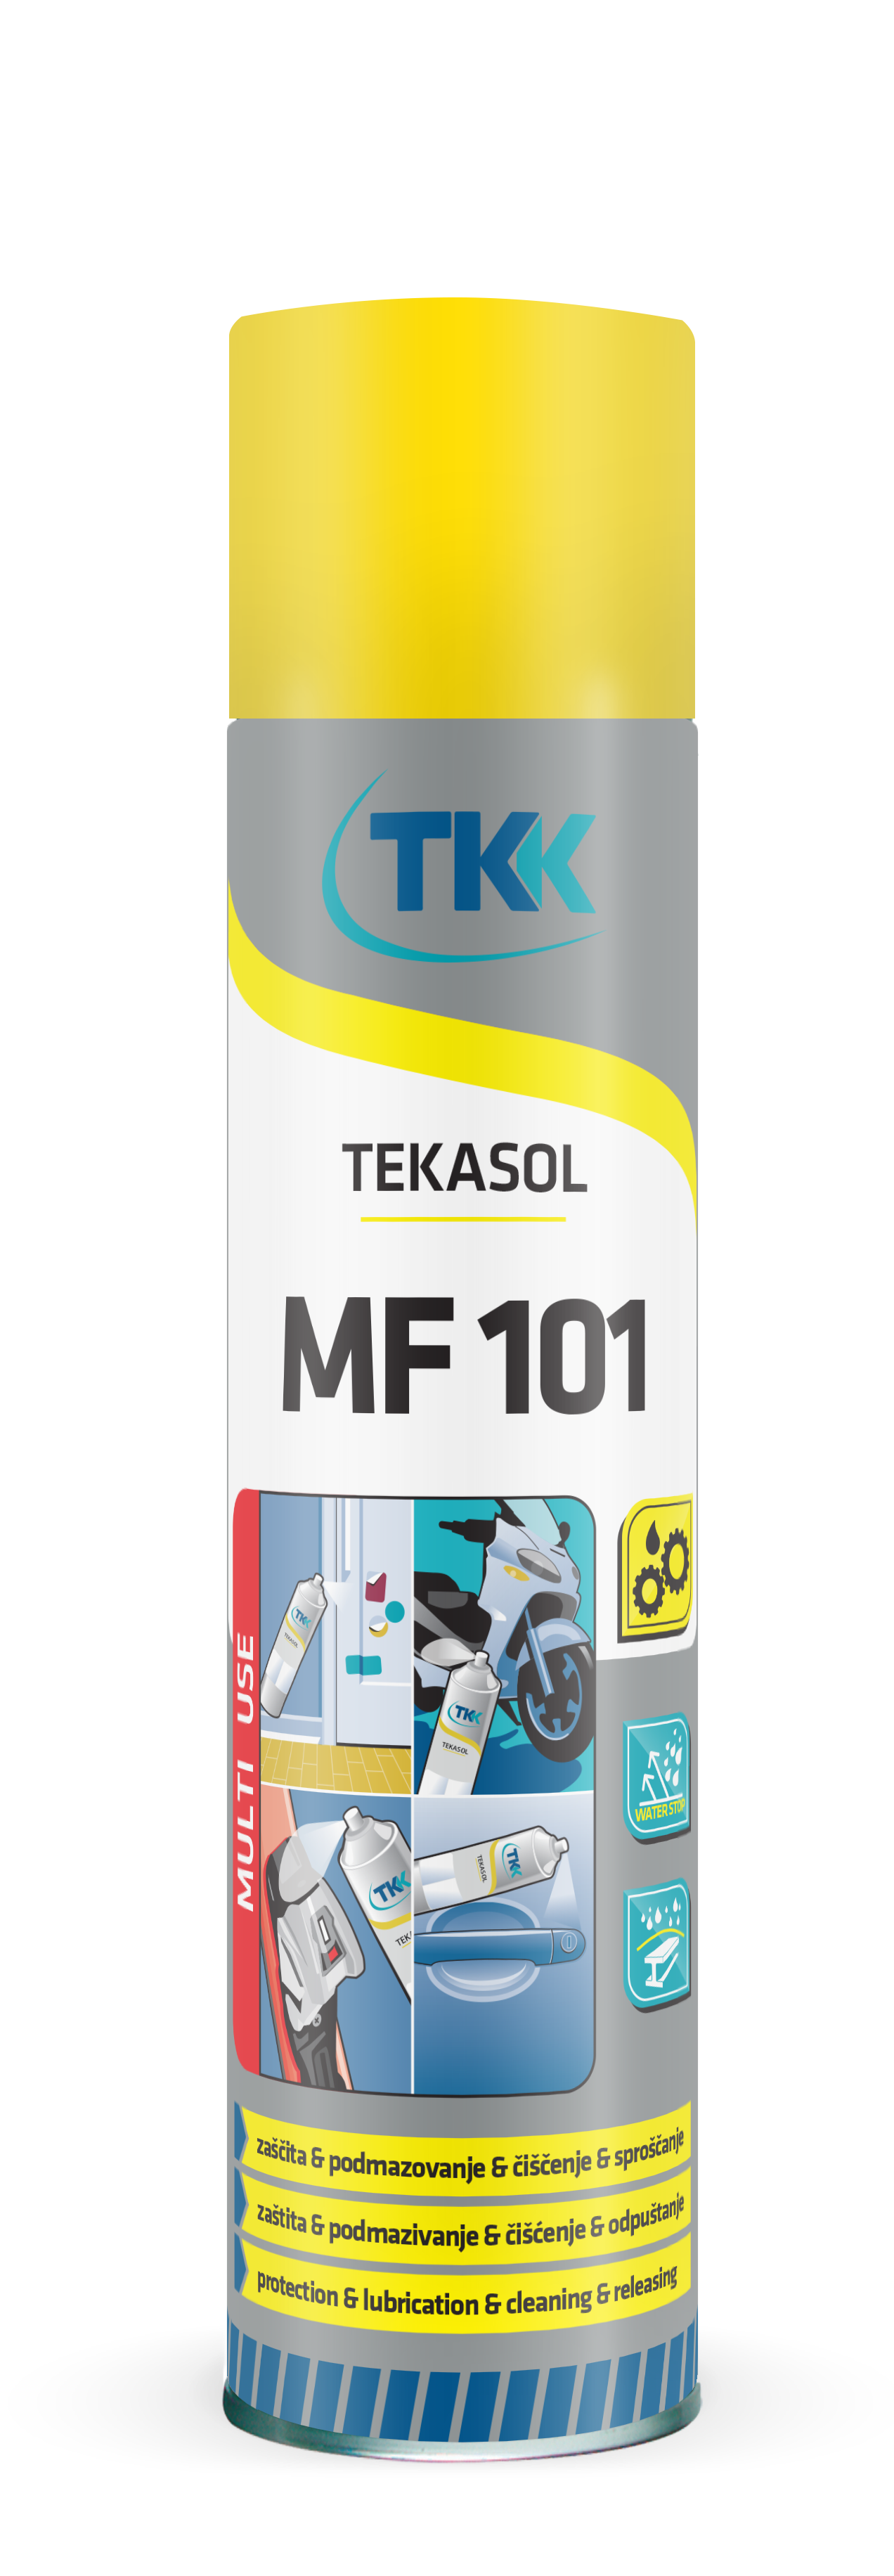 TEKASOL MF101 силиконовый спрей для защиты, смазывания и чистки 400 мл.